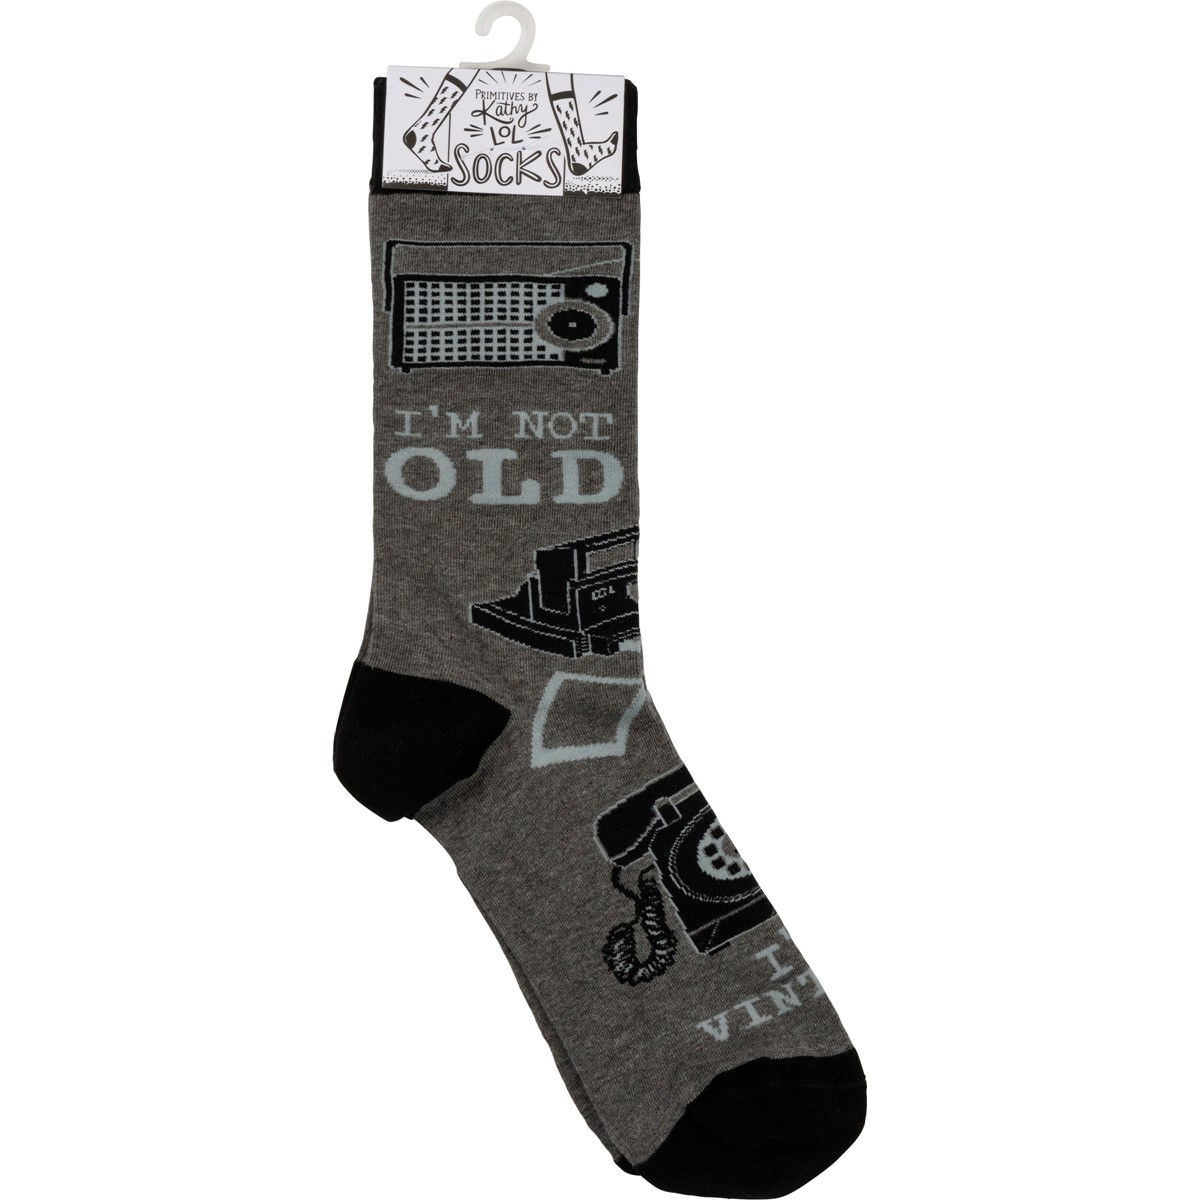 I'm Not Old I'm Vintage Socks - Cotton, Nylon, Spandex